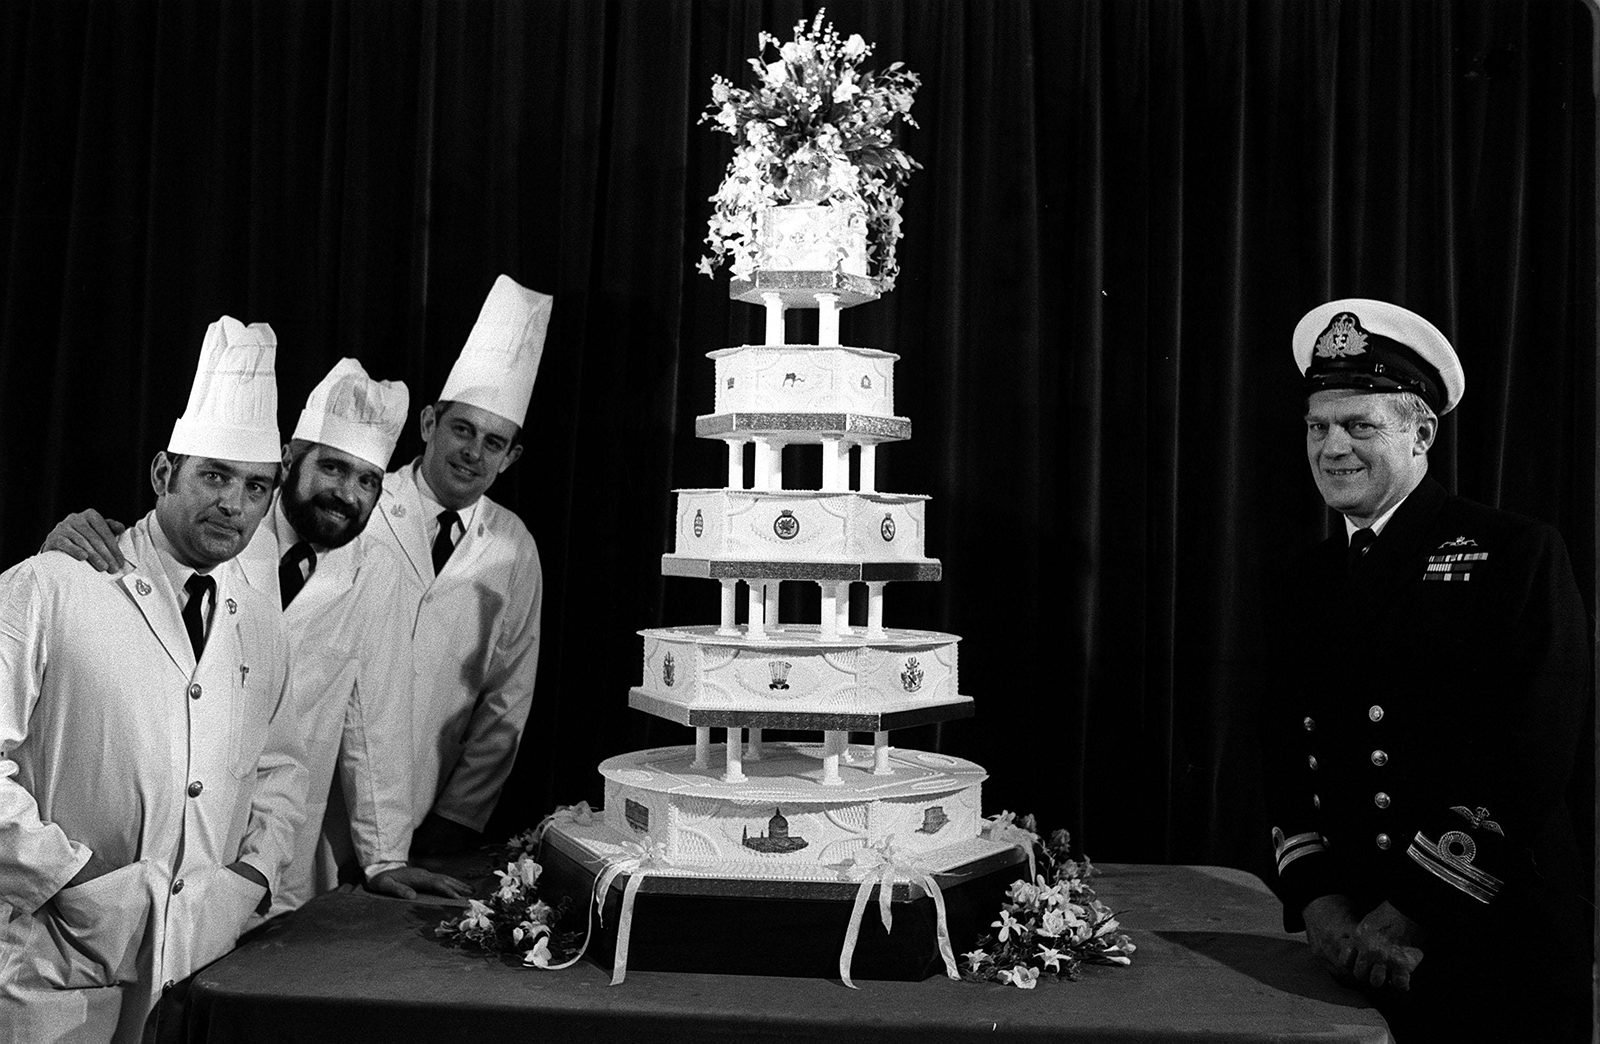 Prince Charles and Princess Diana wedding cake